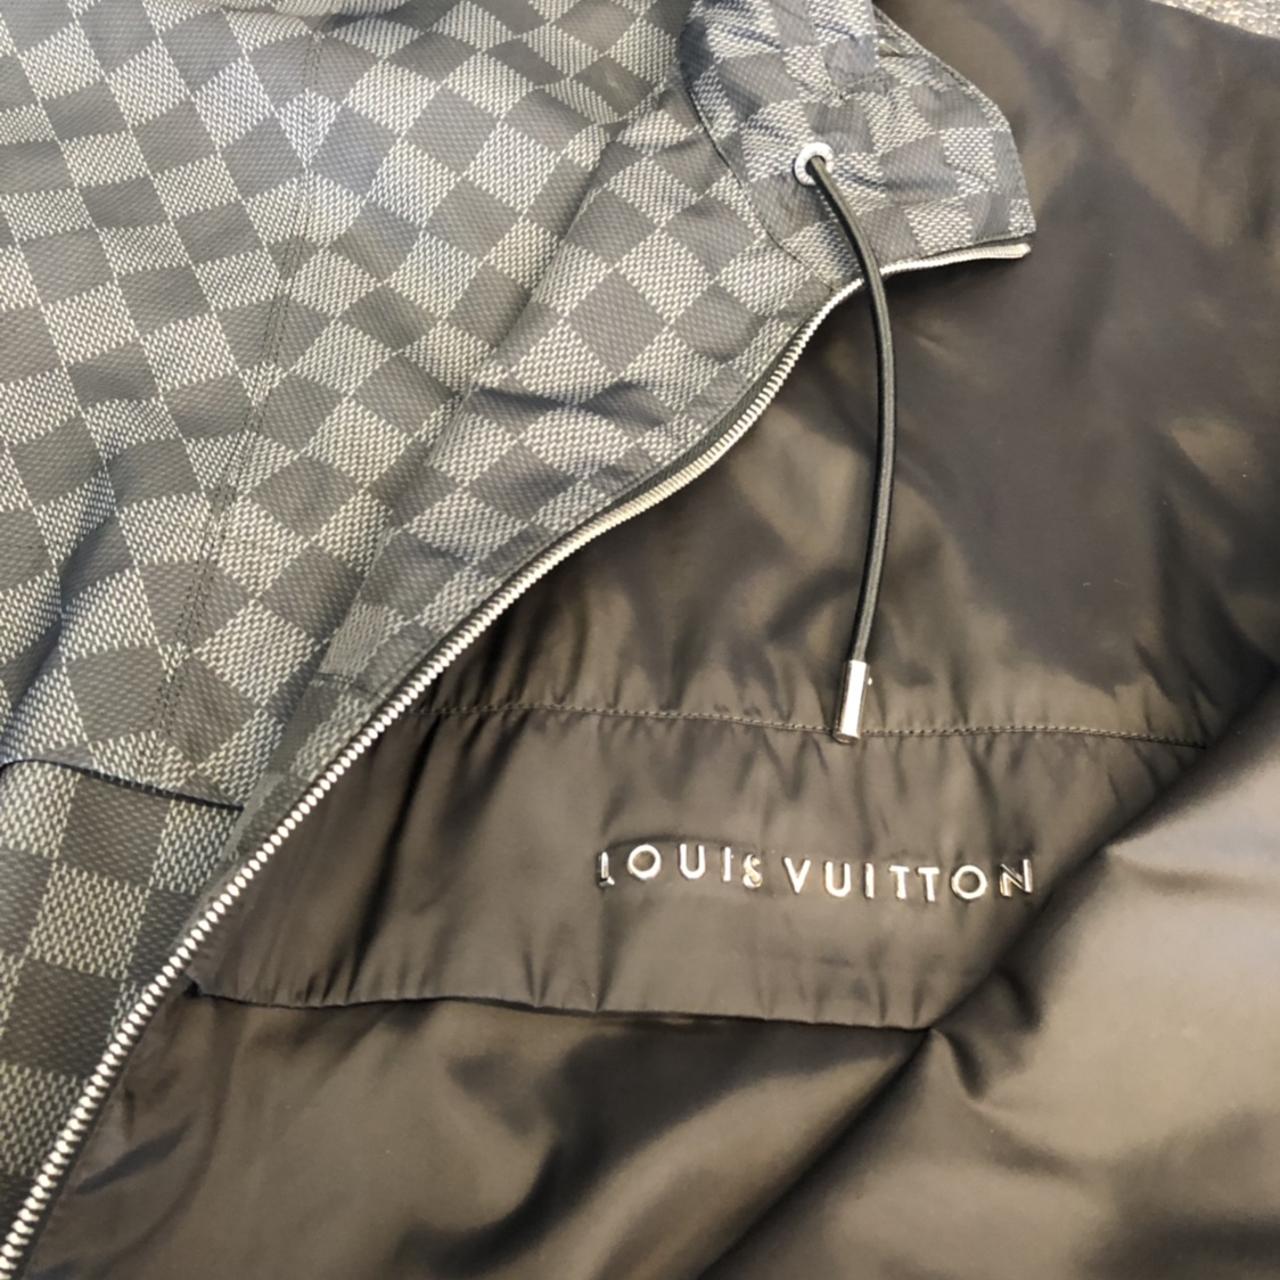 Louis vuitton jacket size S M damier graphite - Depop